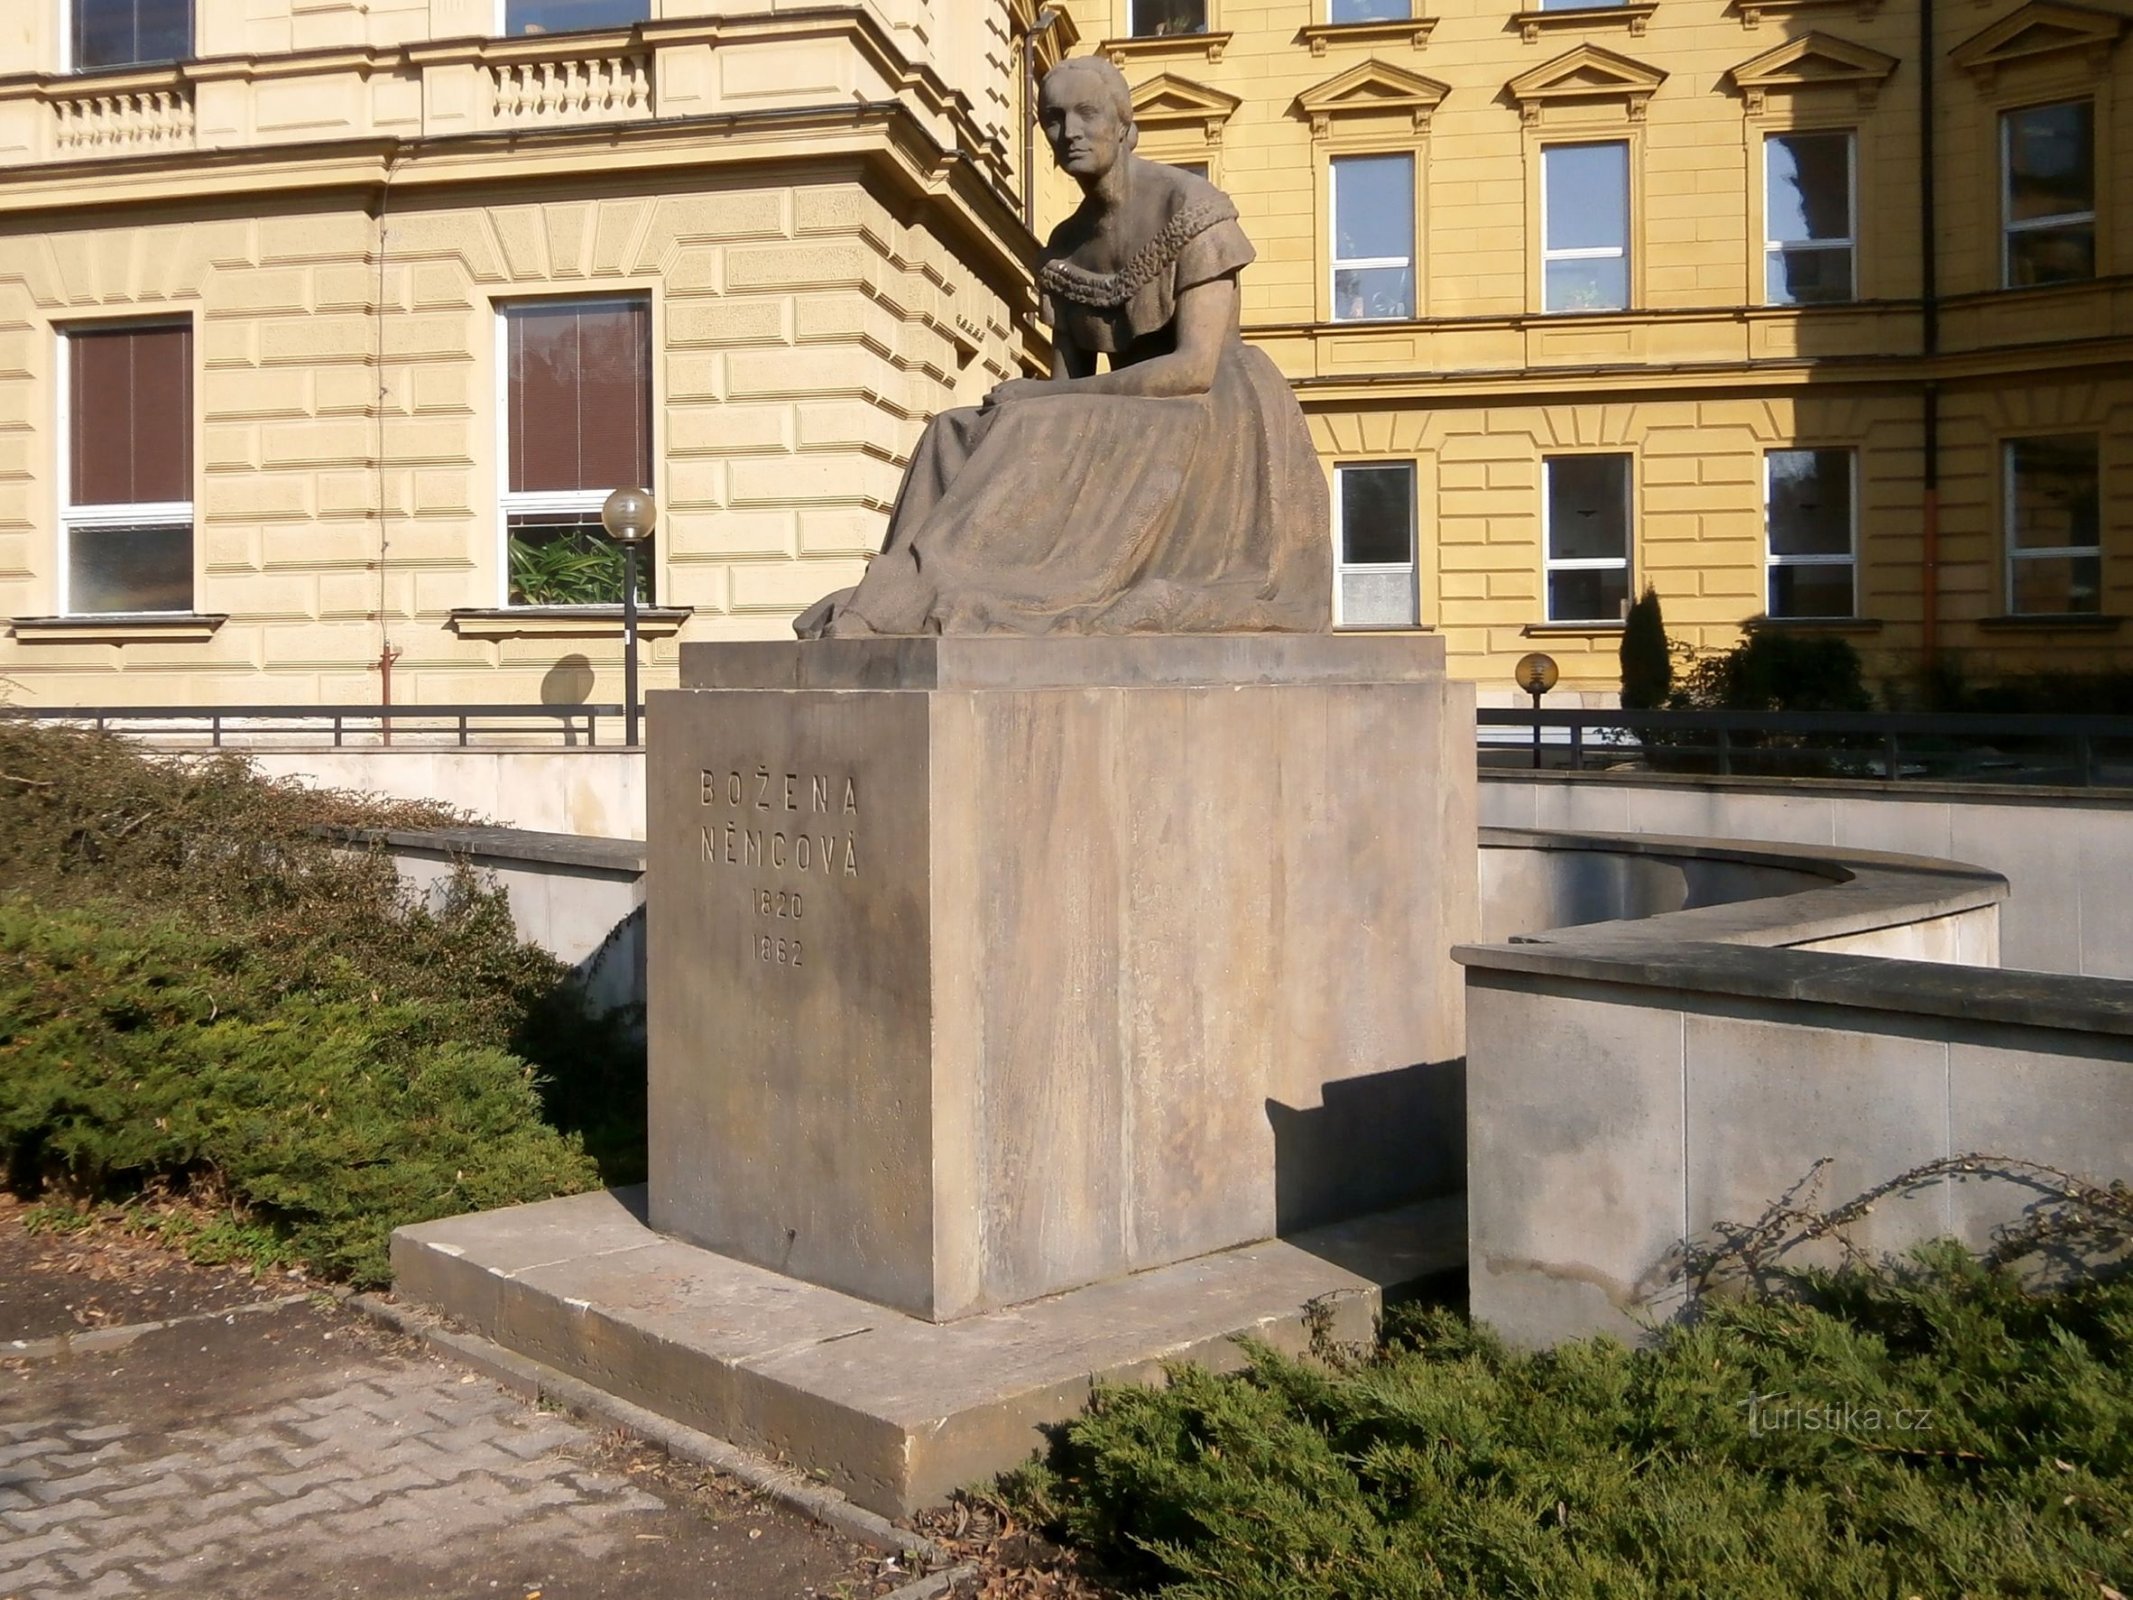 Monumento a Bozena Němcová (Hradec Králové, 26.3.2014 giugno XNUMX)